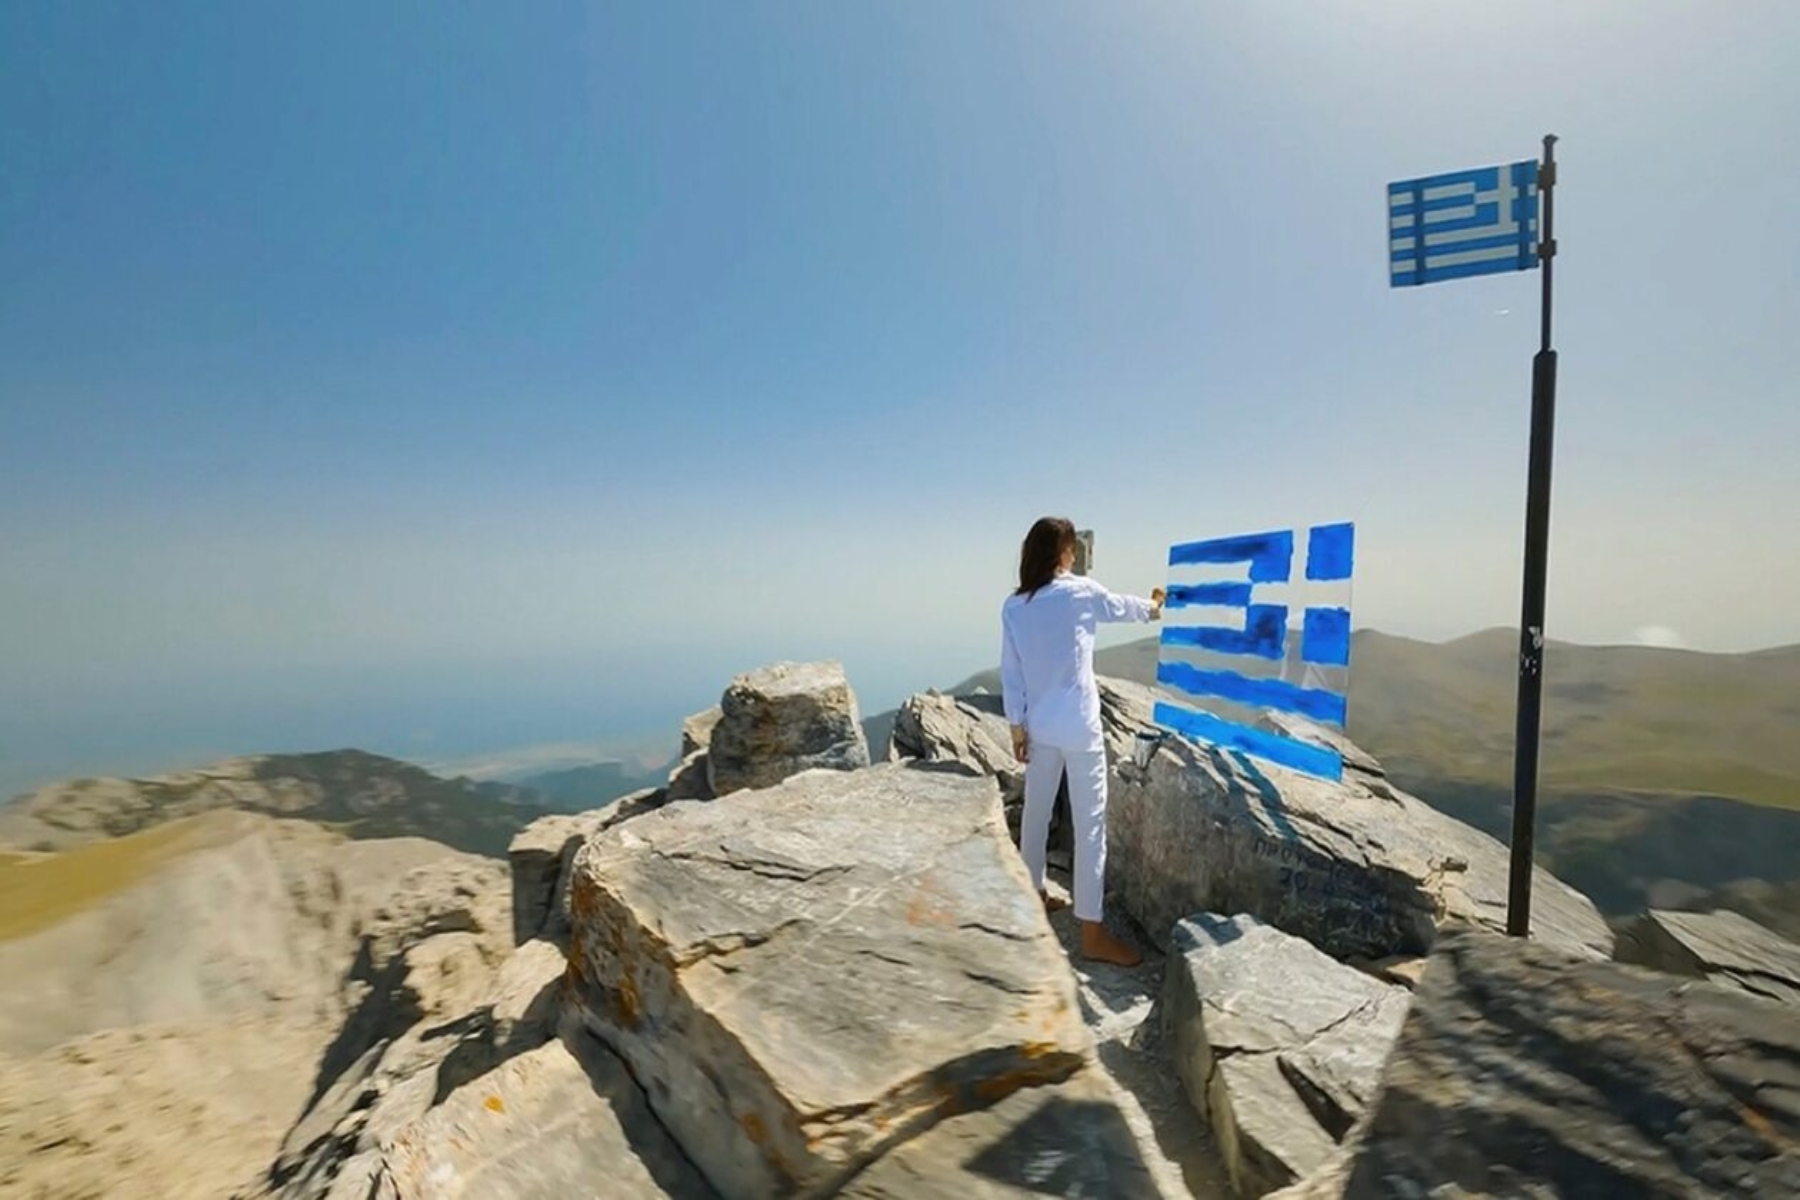 Ελληνική σημαία: Η Καρολίνα Ροβύθη δημιουργεί μια ελληνική σημαία στον Όλυμπο